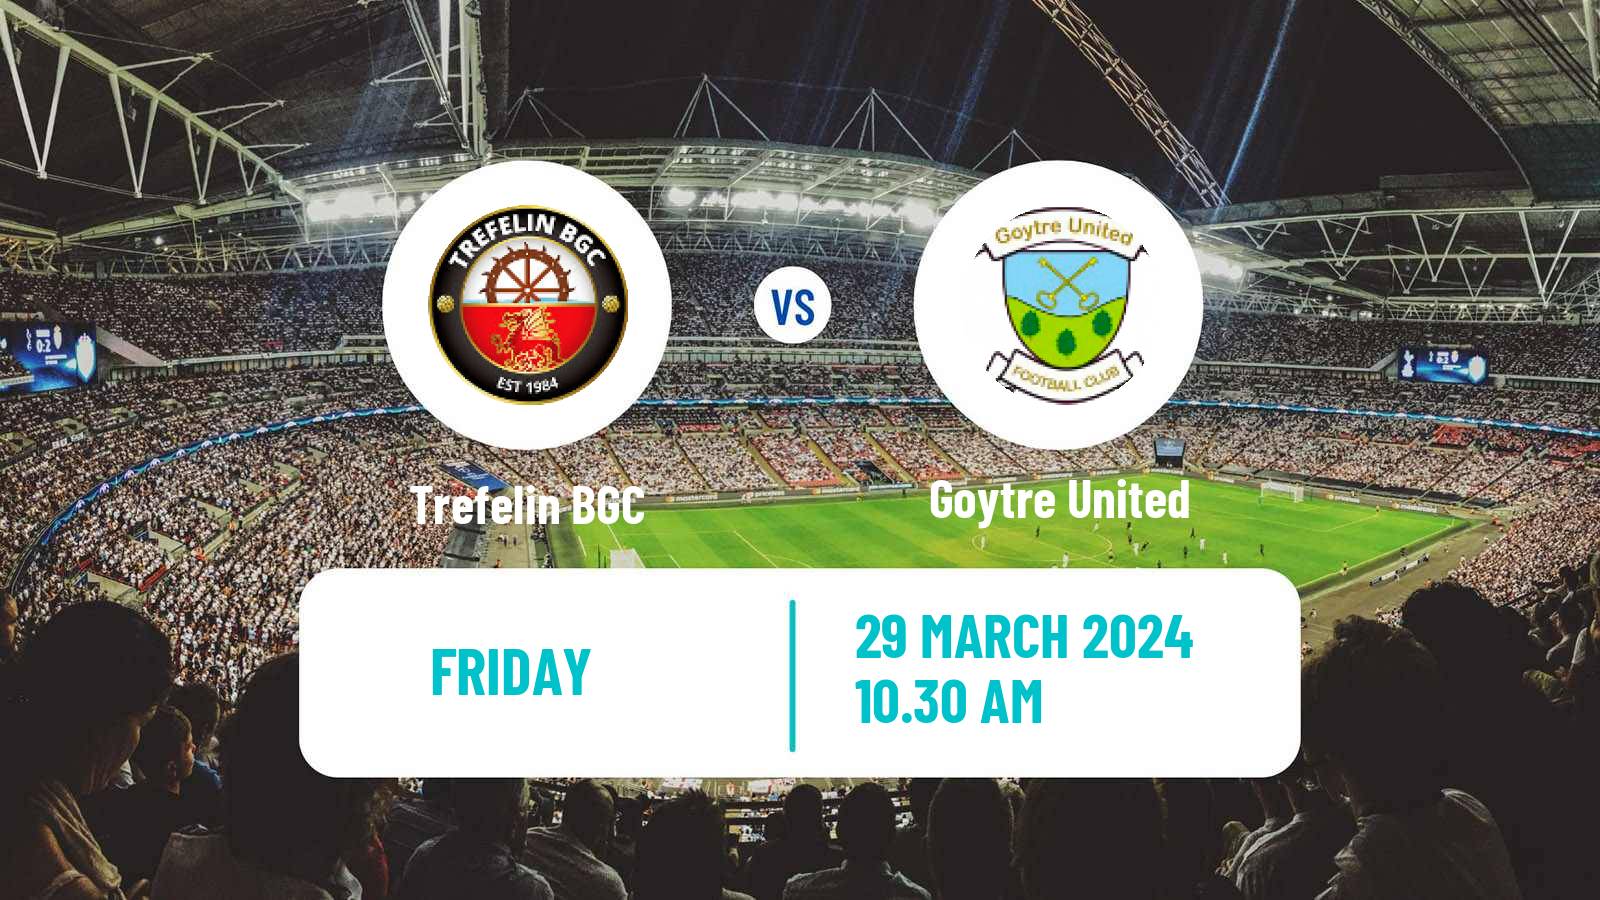 Soccer Welsh Cymru South Trefelin - Goytre United